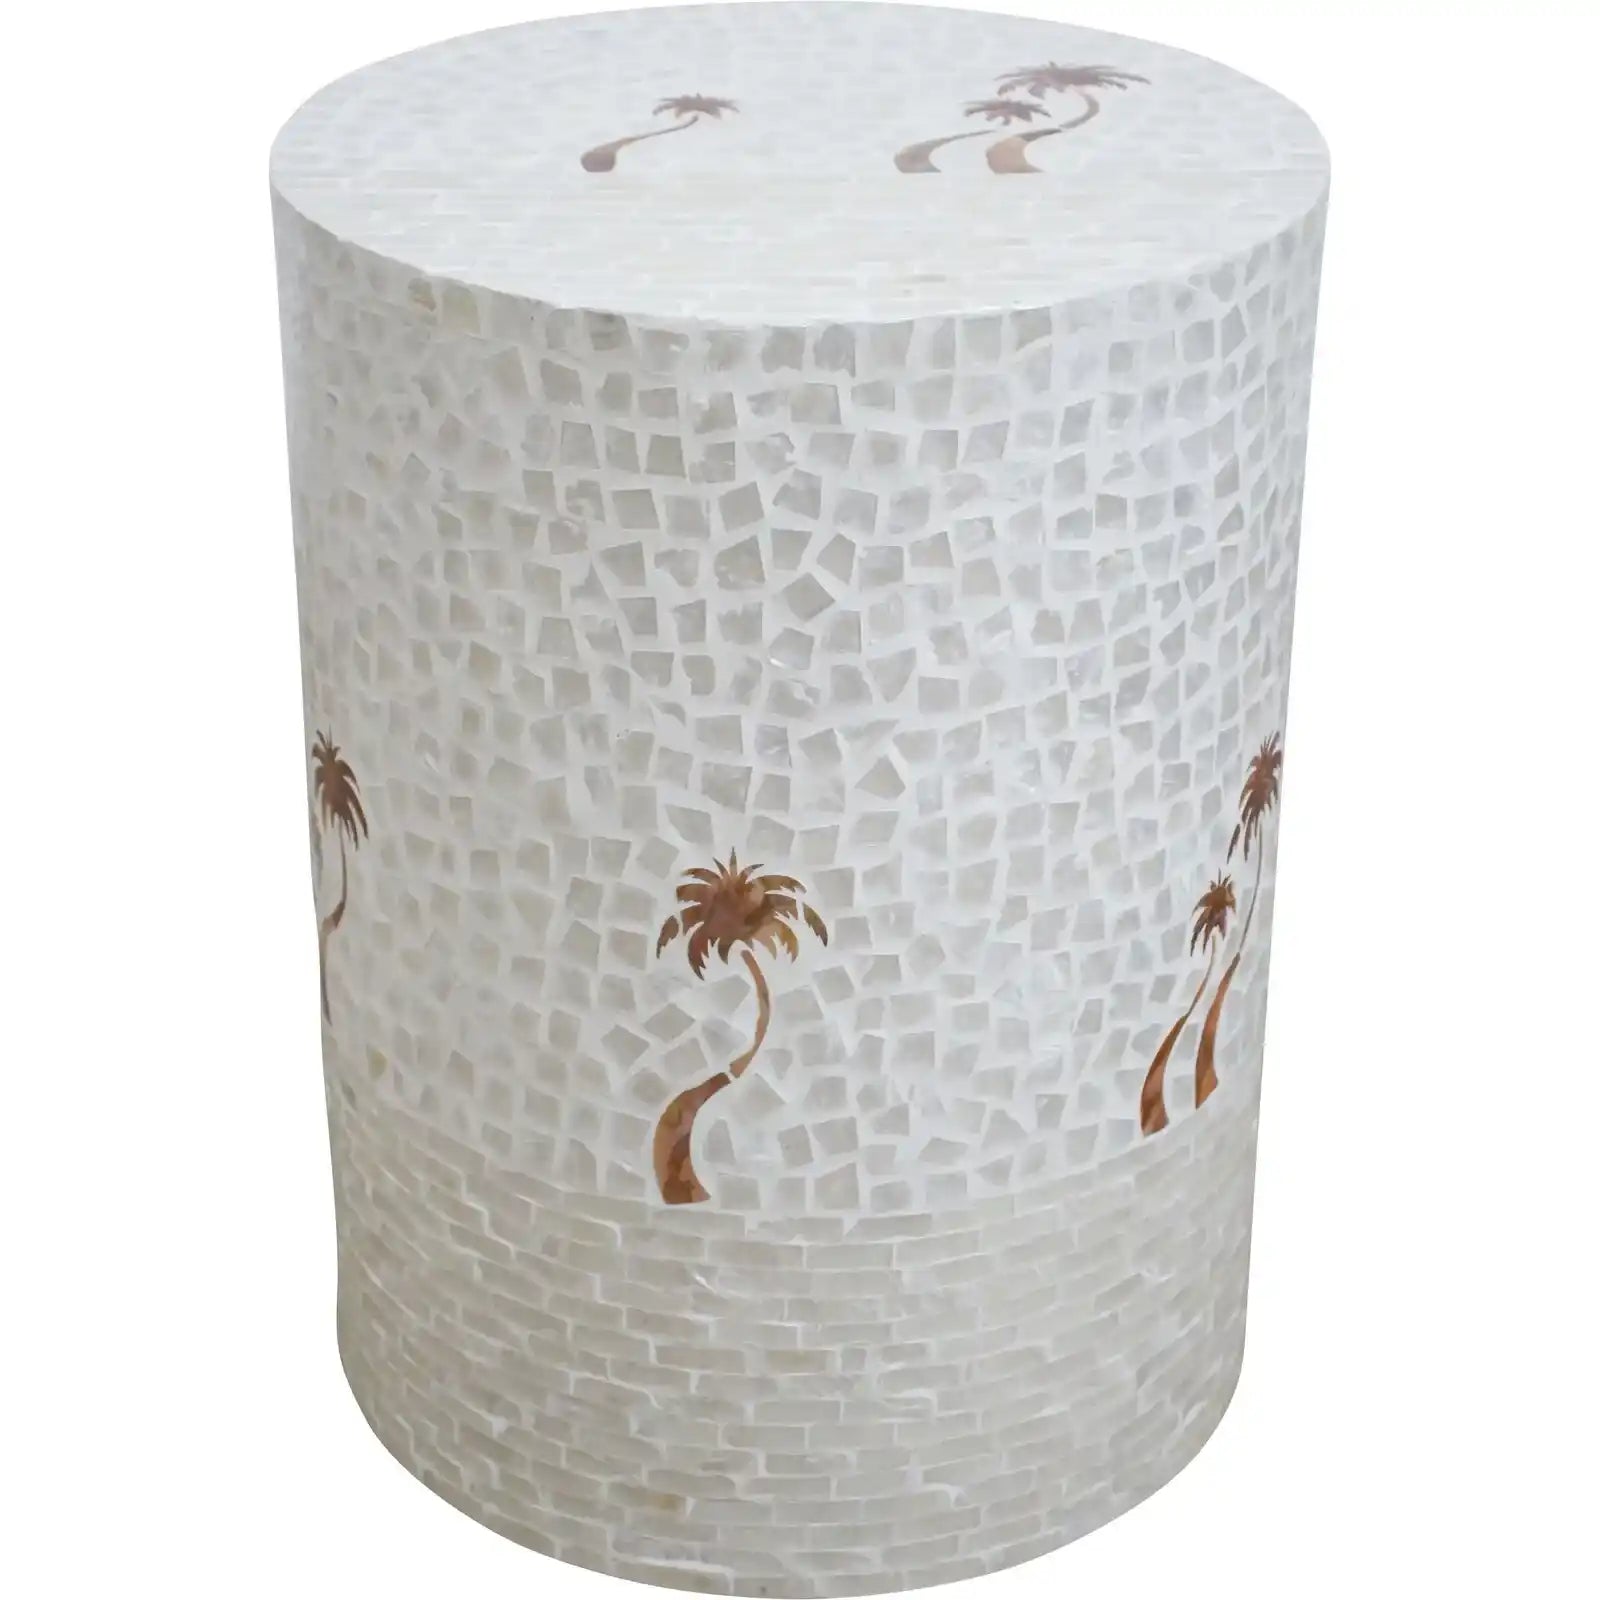 Capiz shell stool with palm motifs 